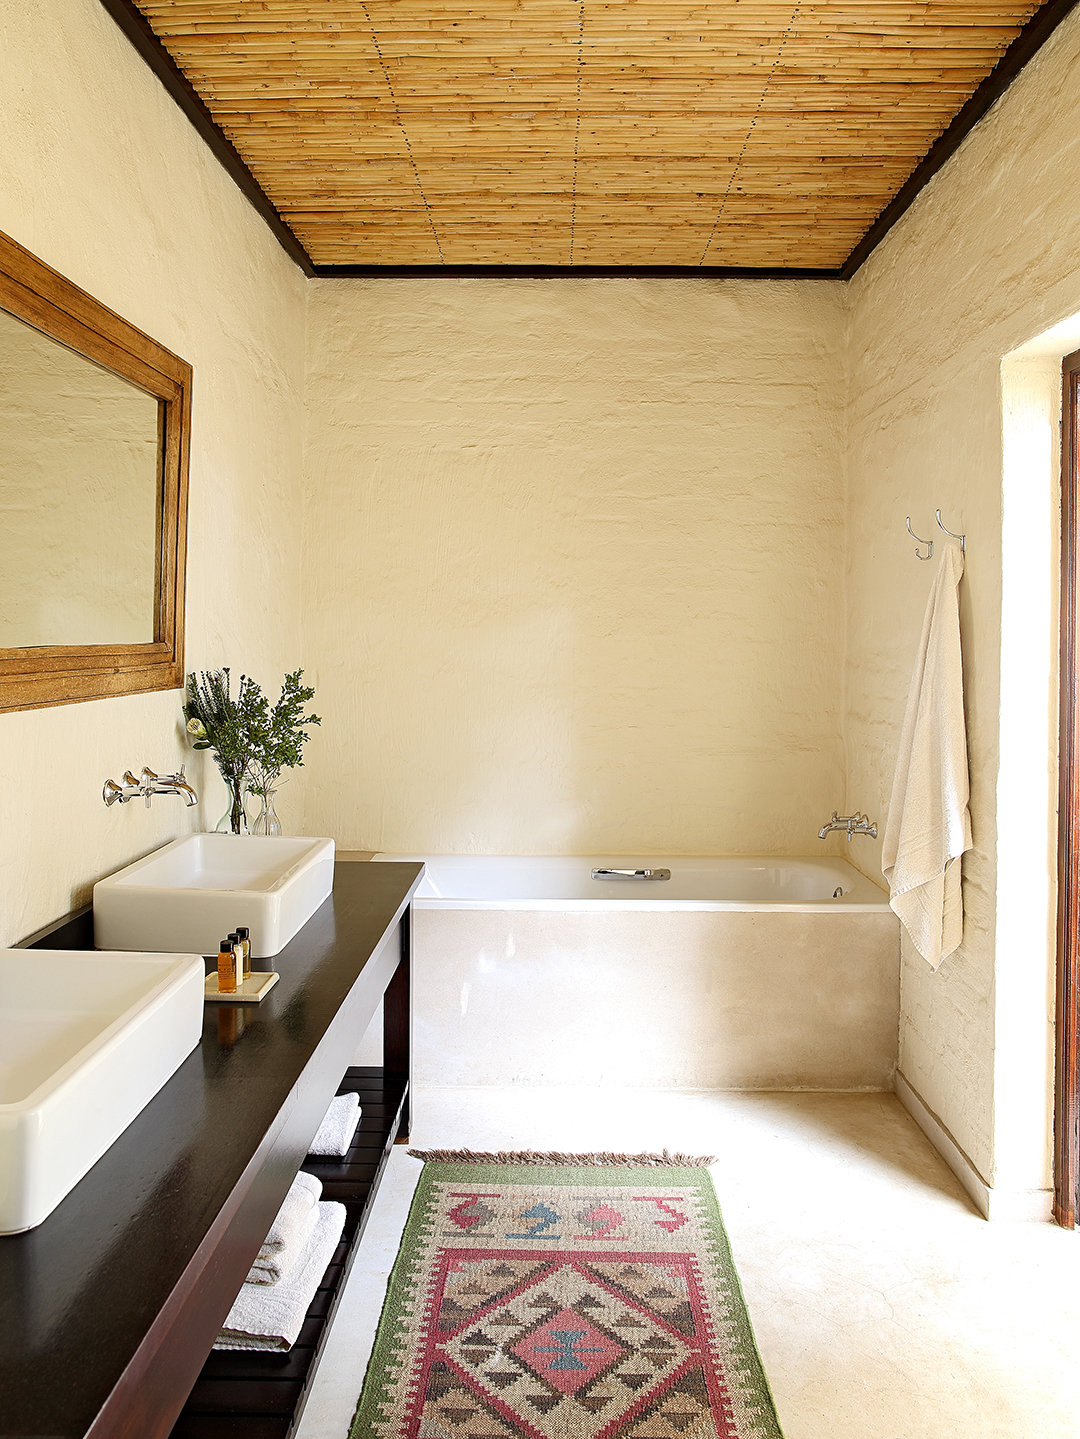 Elephant House bathroom with bath, double basins and floor rug.